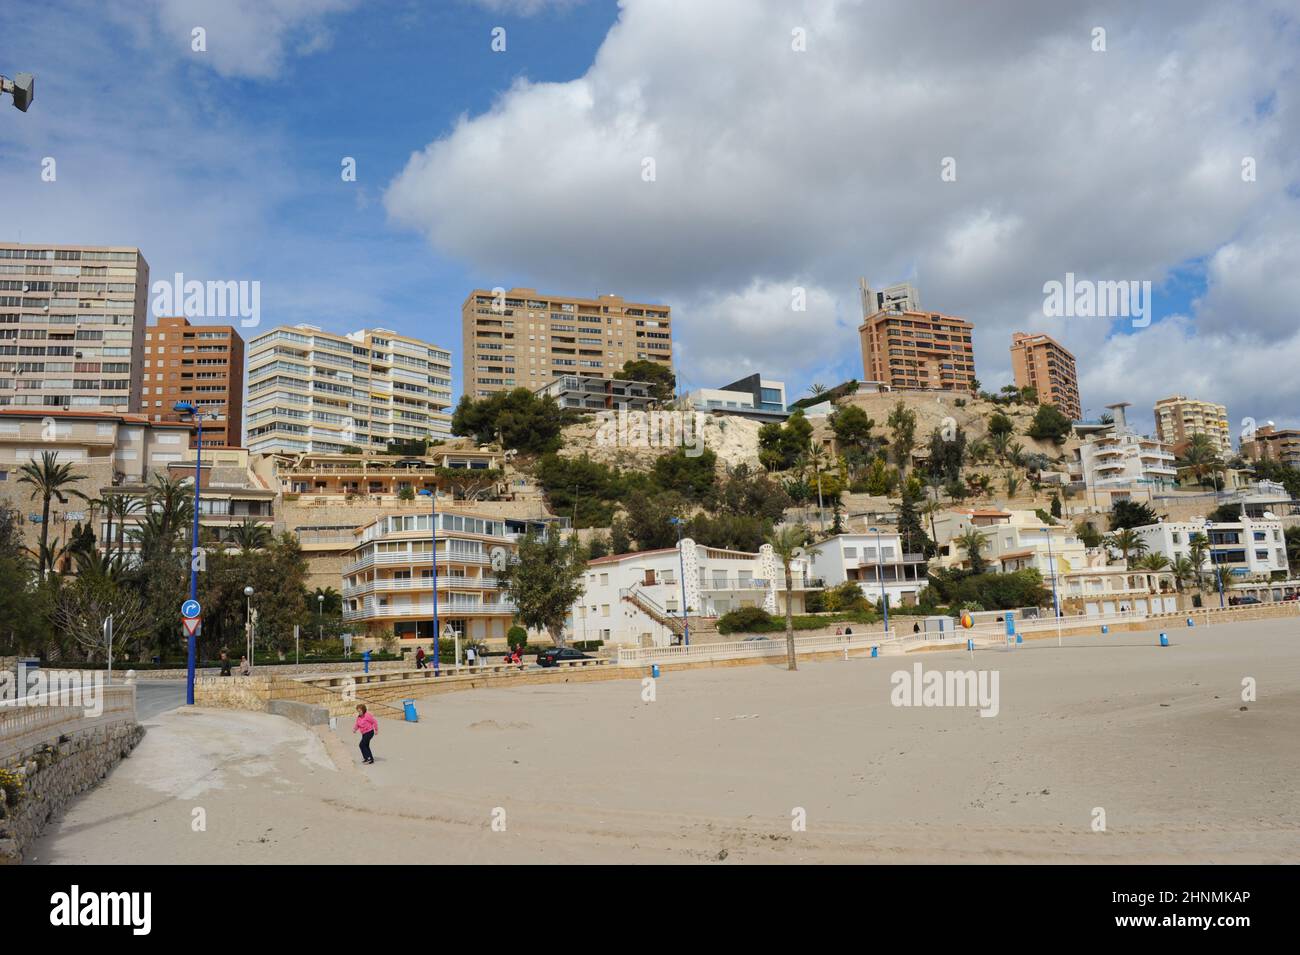 Facciate di case, skyline, grattacieli, paesaggi urbani a Benidorm, provincia di Alicante, Costa Blanca, Spagna, 12 marzo 2013 Foto Stock